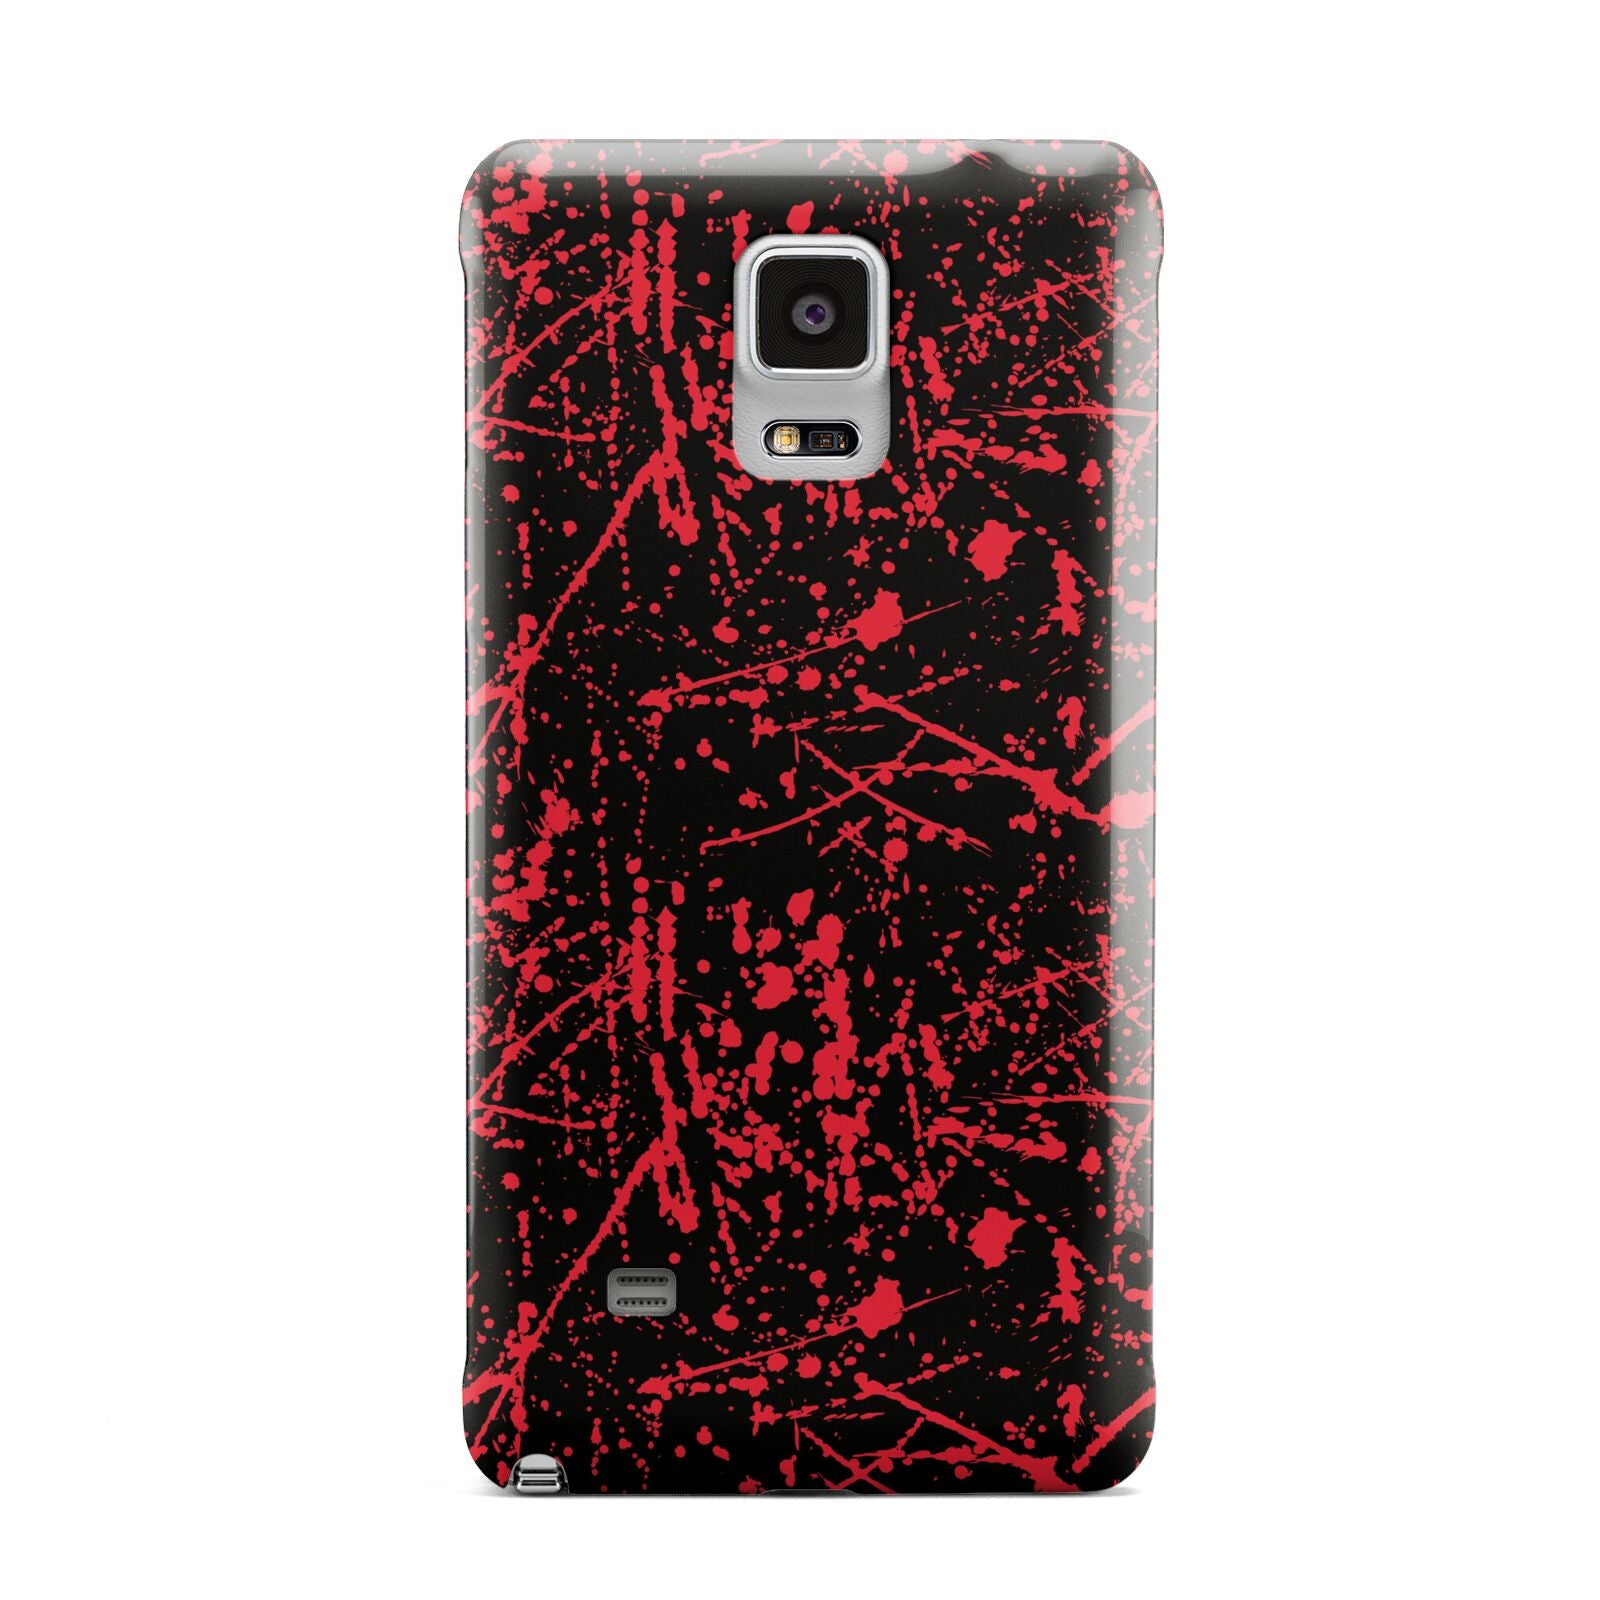 Blood Splatters Samsung Galaxy Note 4 Case